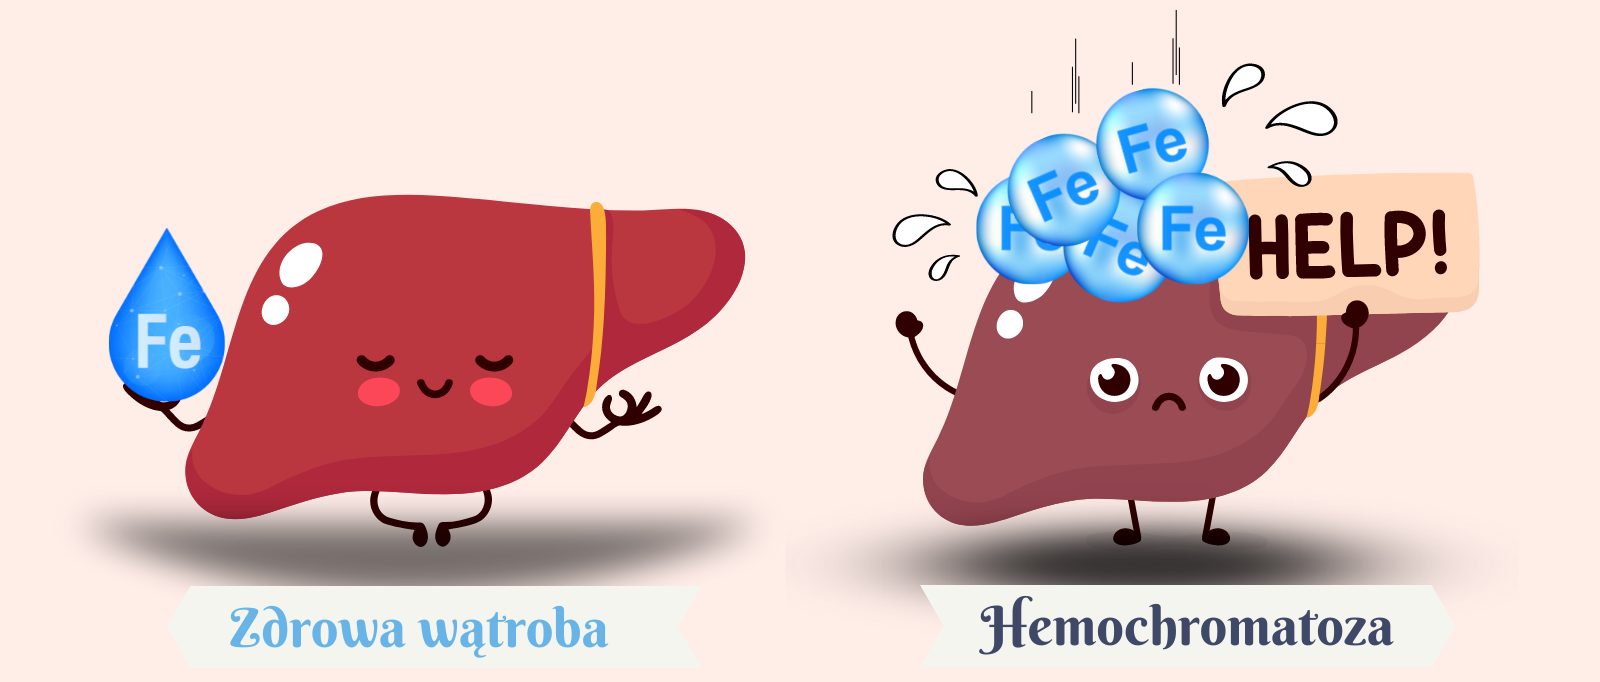 Hemochromatoza